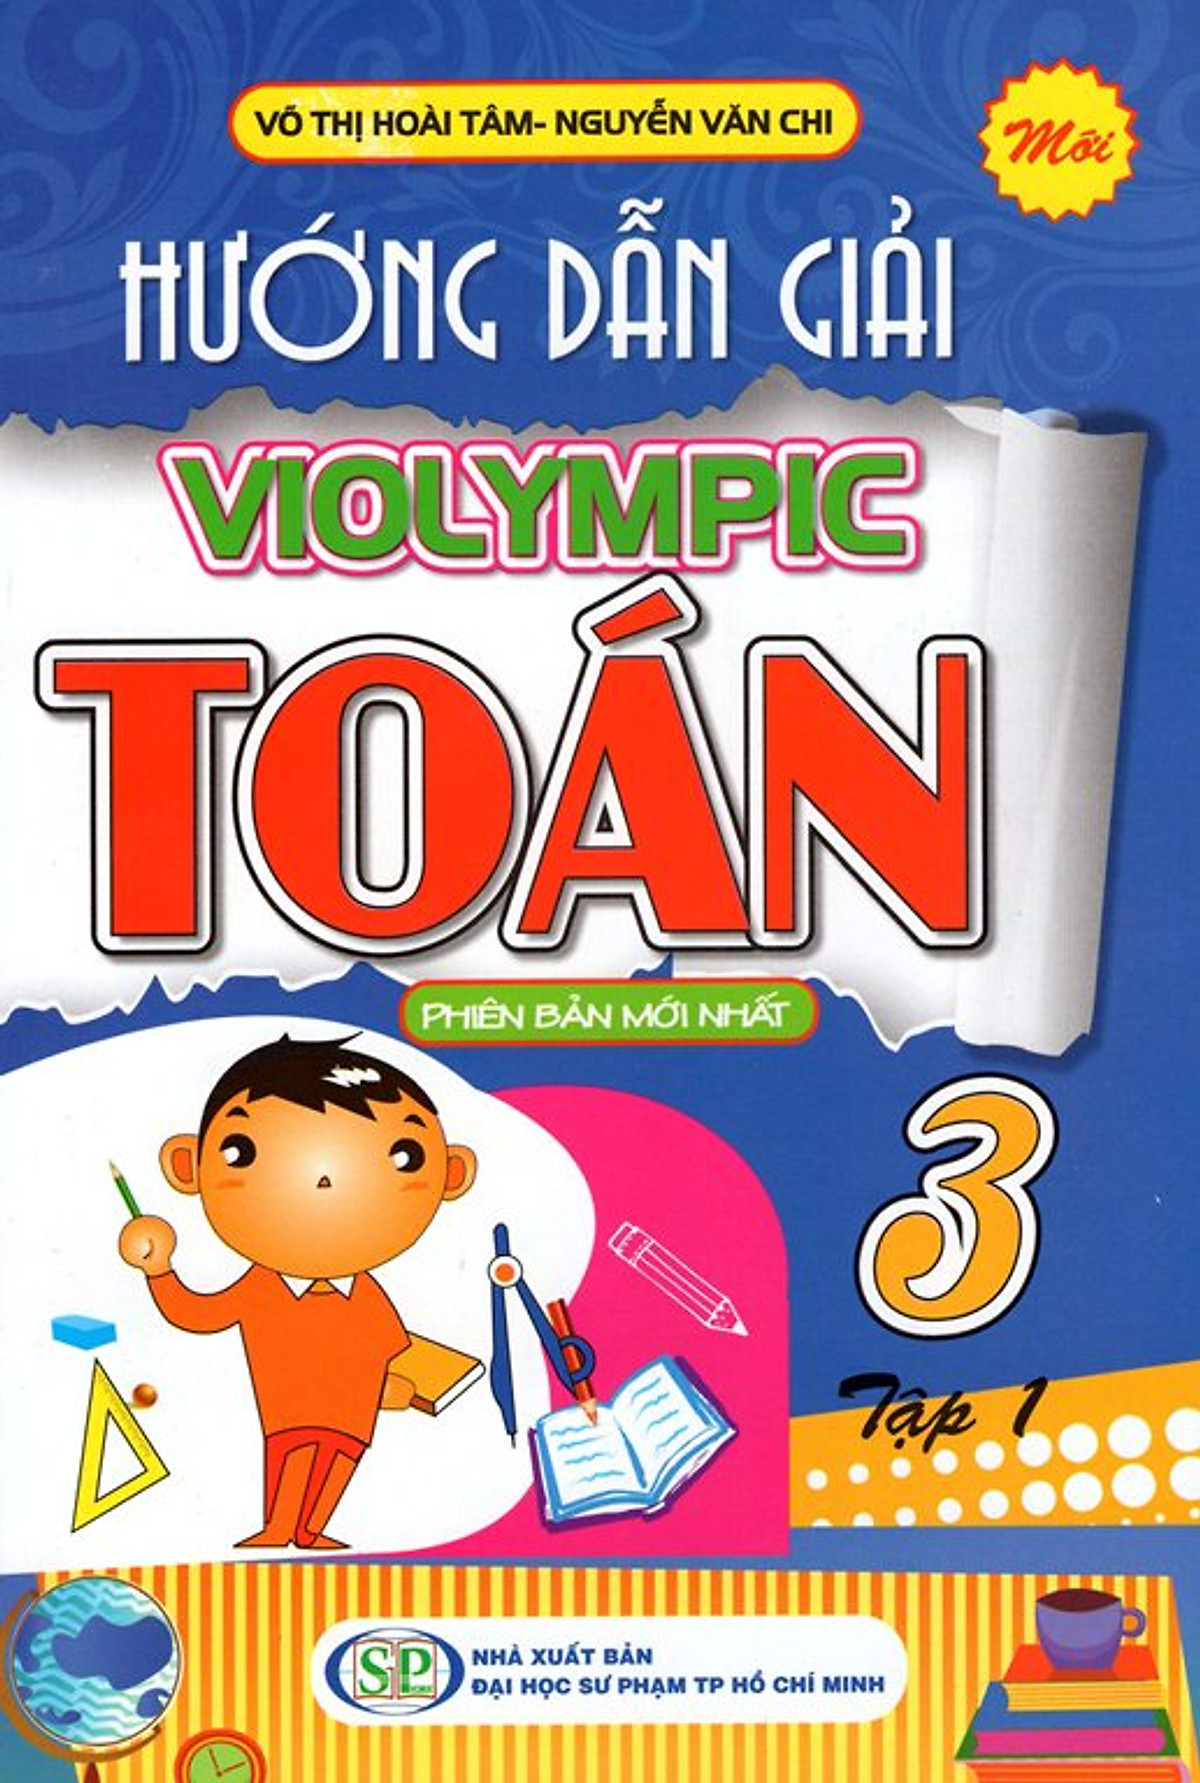 Hướng Dẫn Giải Violympic Toán Lớp 3 (Tập 1)